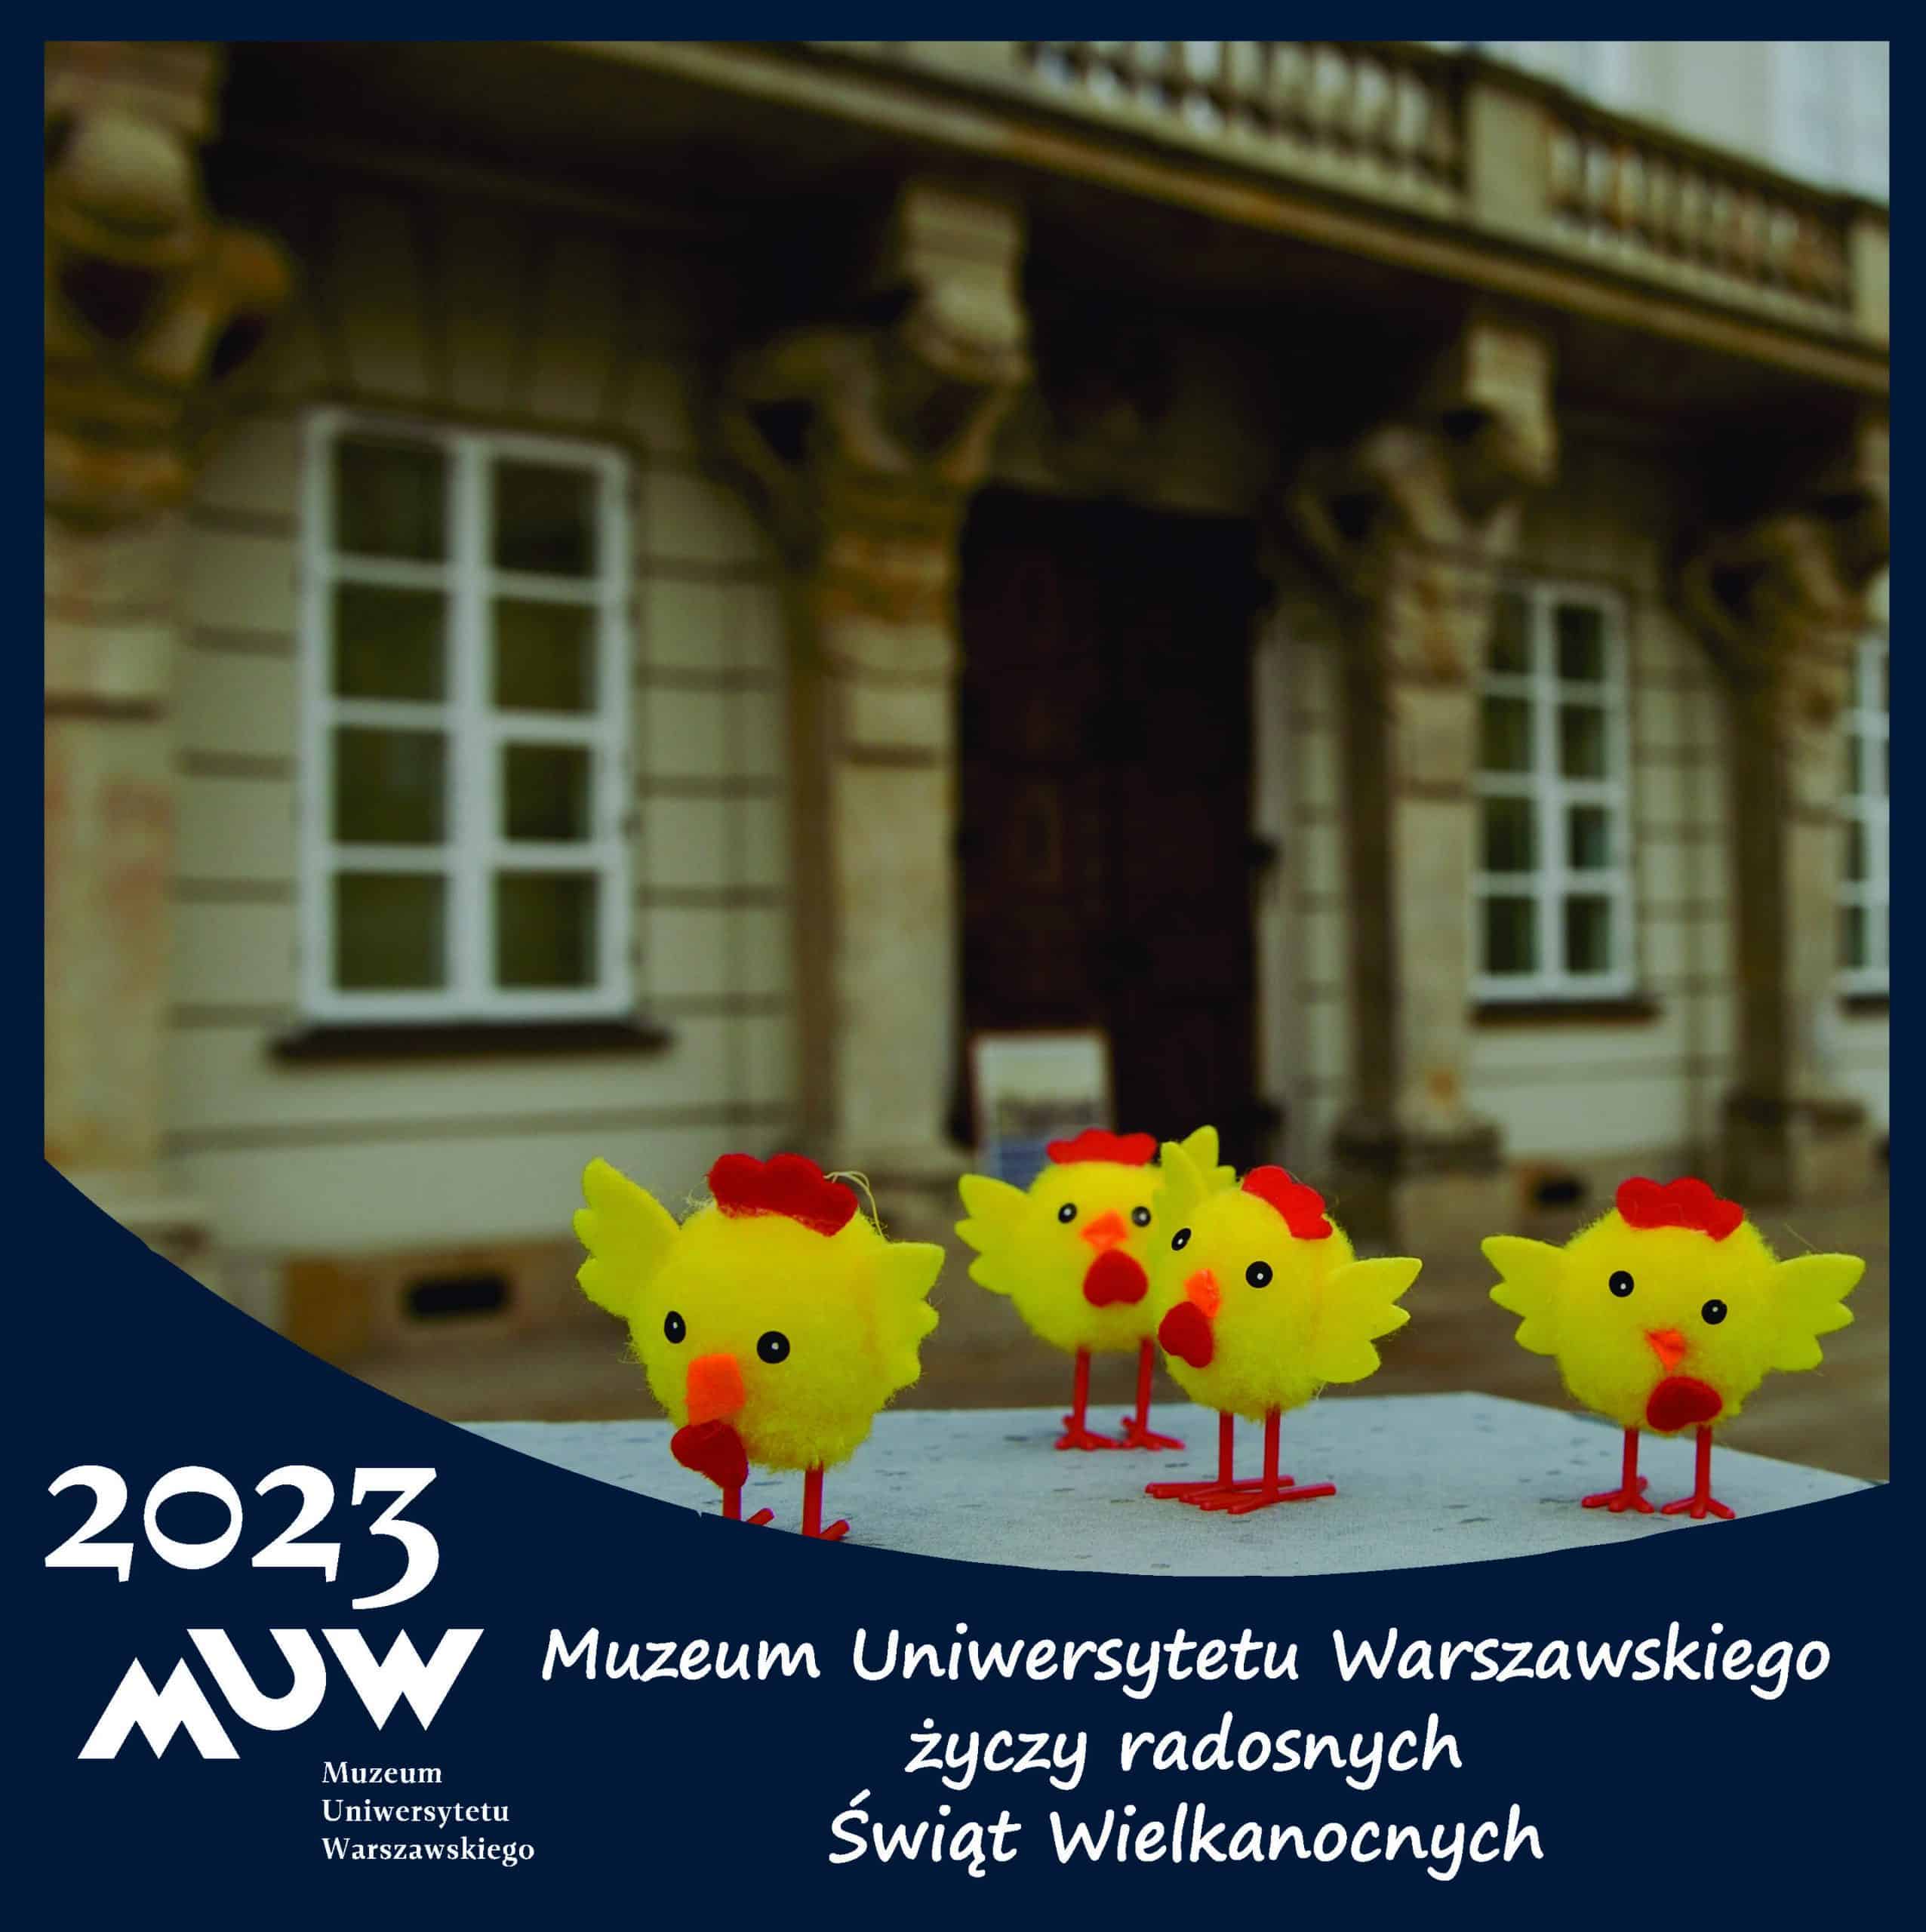 Kartka z napisem: Muzeum Uniwersytetu Warszawskiego życzy radosnych Świąt Wielkanocnych, 2023 MUW. Na kartce widać cztery żółte kurczaczki, a za nimi wejście do Muzeum.